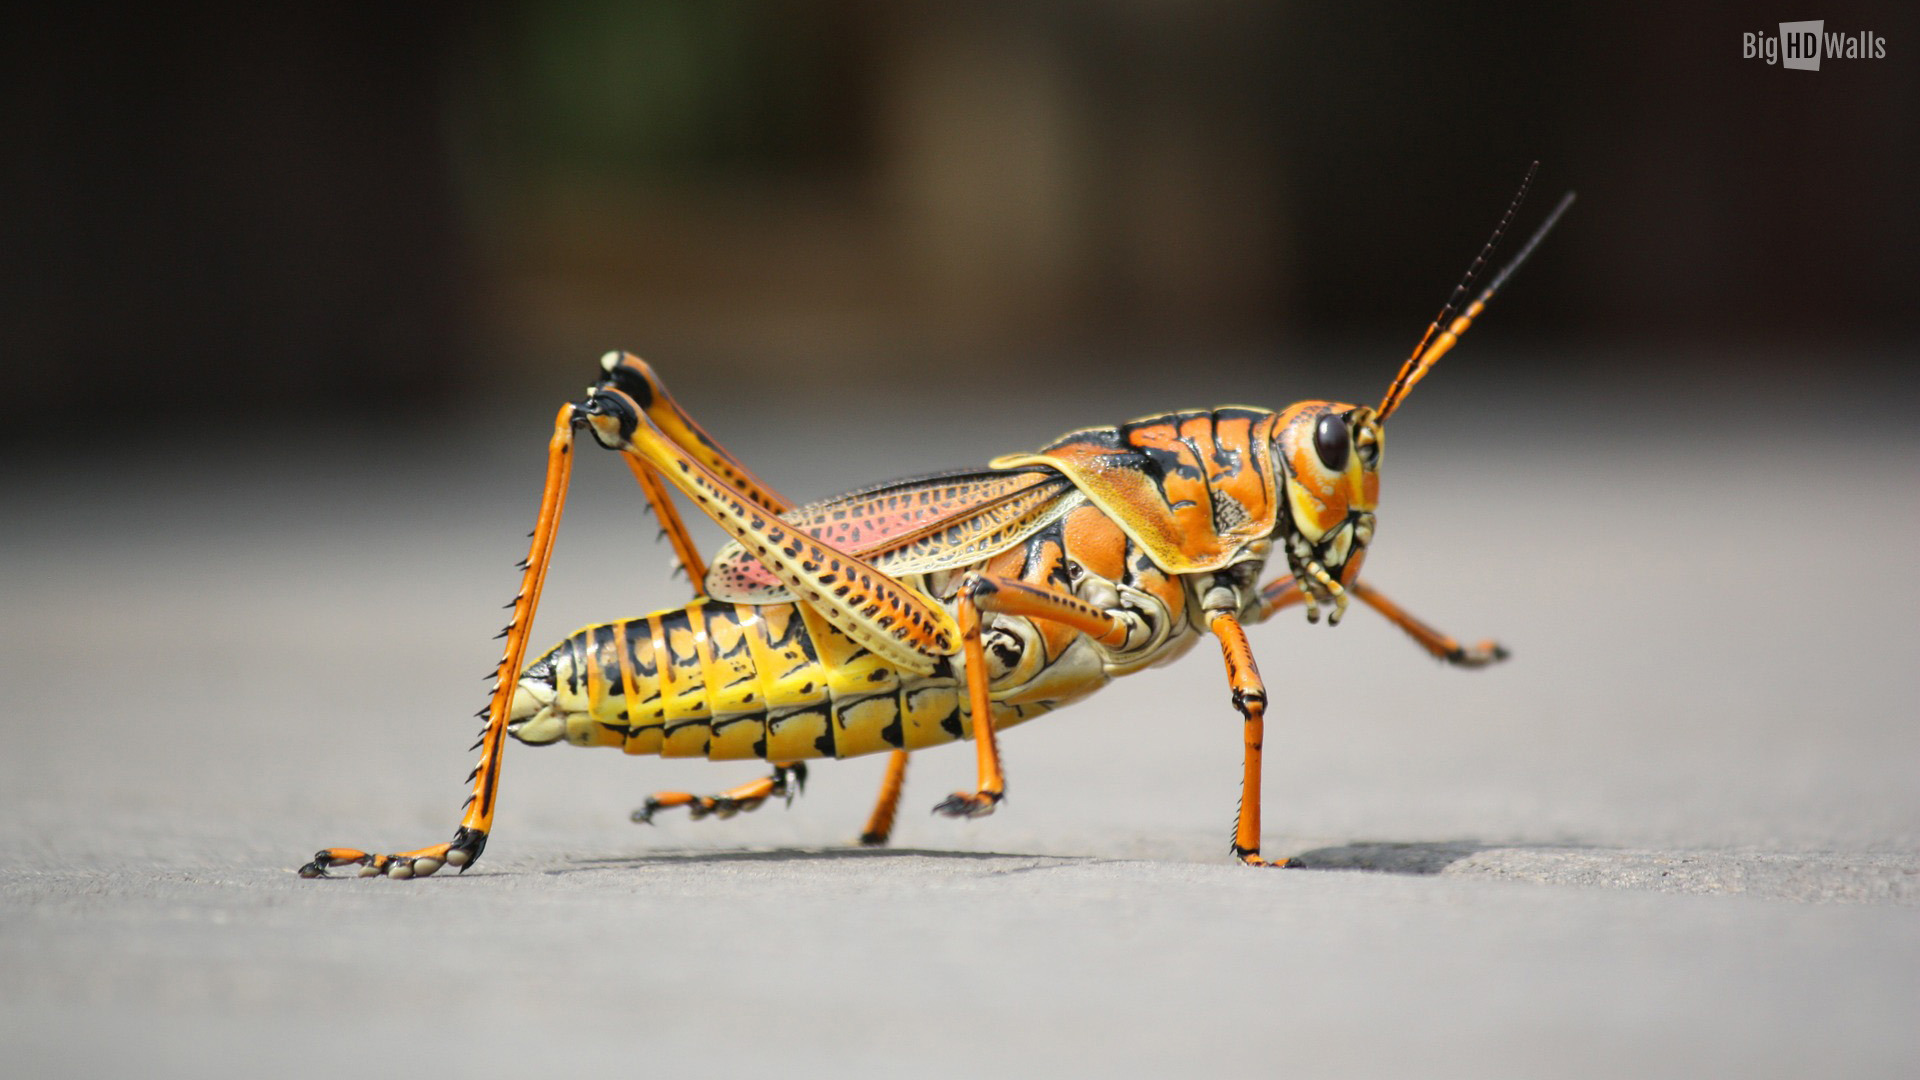 Grasshopper HD Wallpaper BigHDwalls